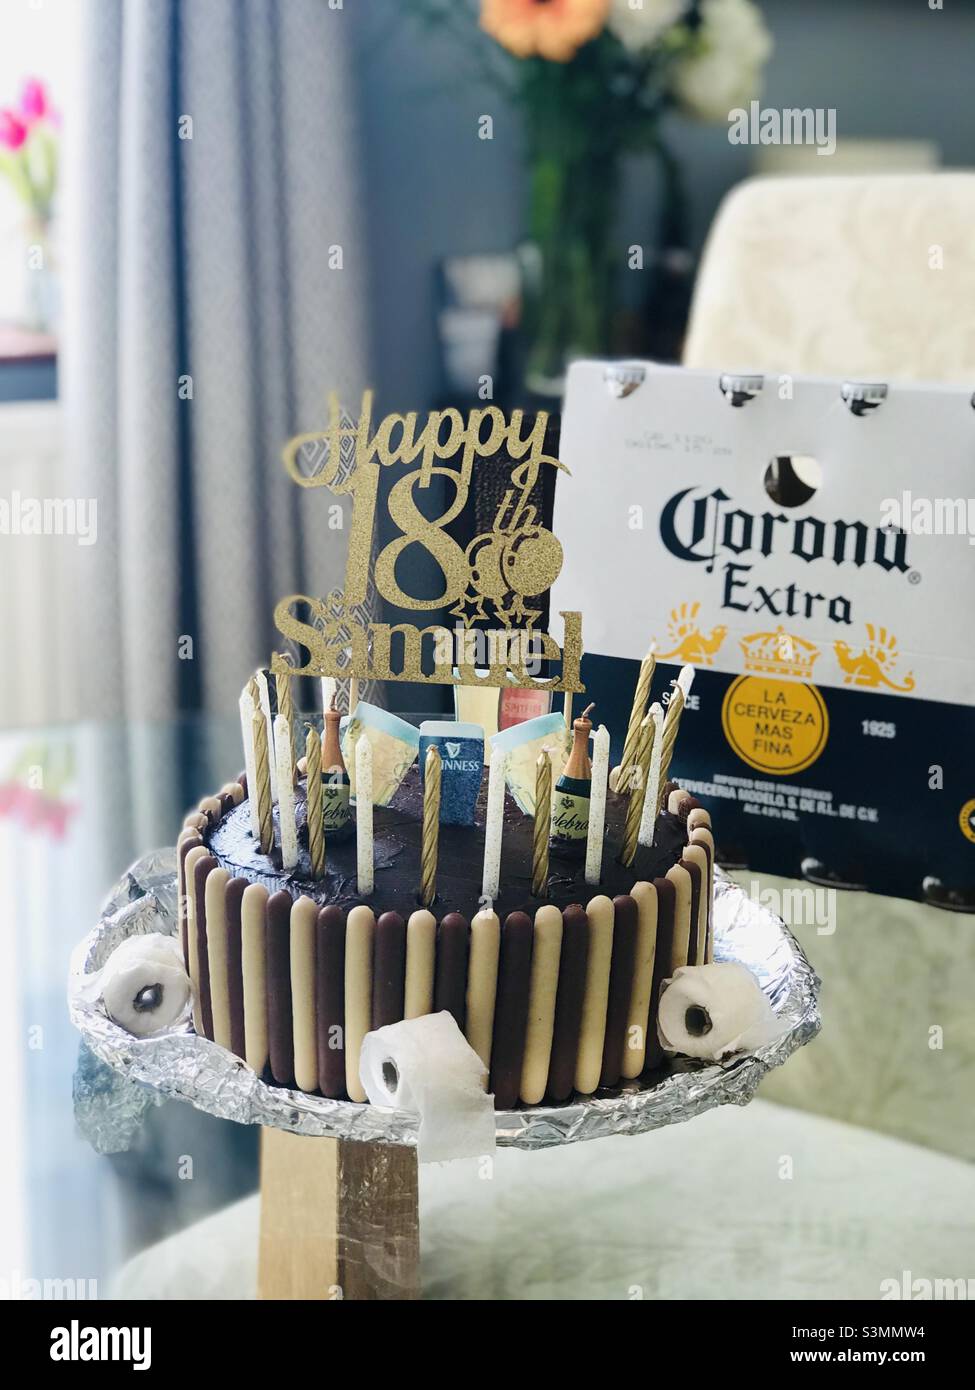 LockDown anniversaire 2020 - gâteau d'anniversaire 18th avec mini rouleaux de toilette de guimauve faits main, avec un paquet obligatoire de bière de lager de nom de virus Banque D'Images